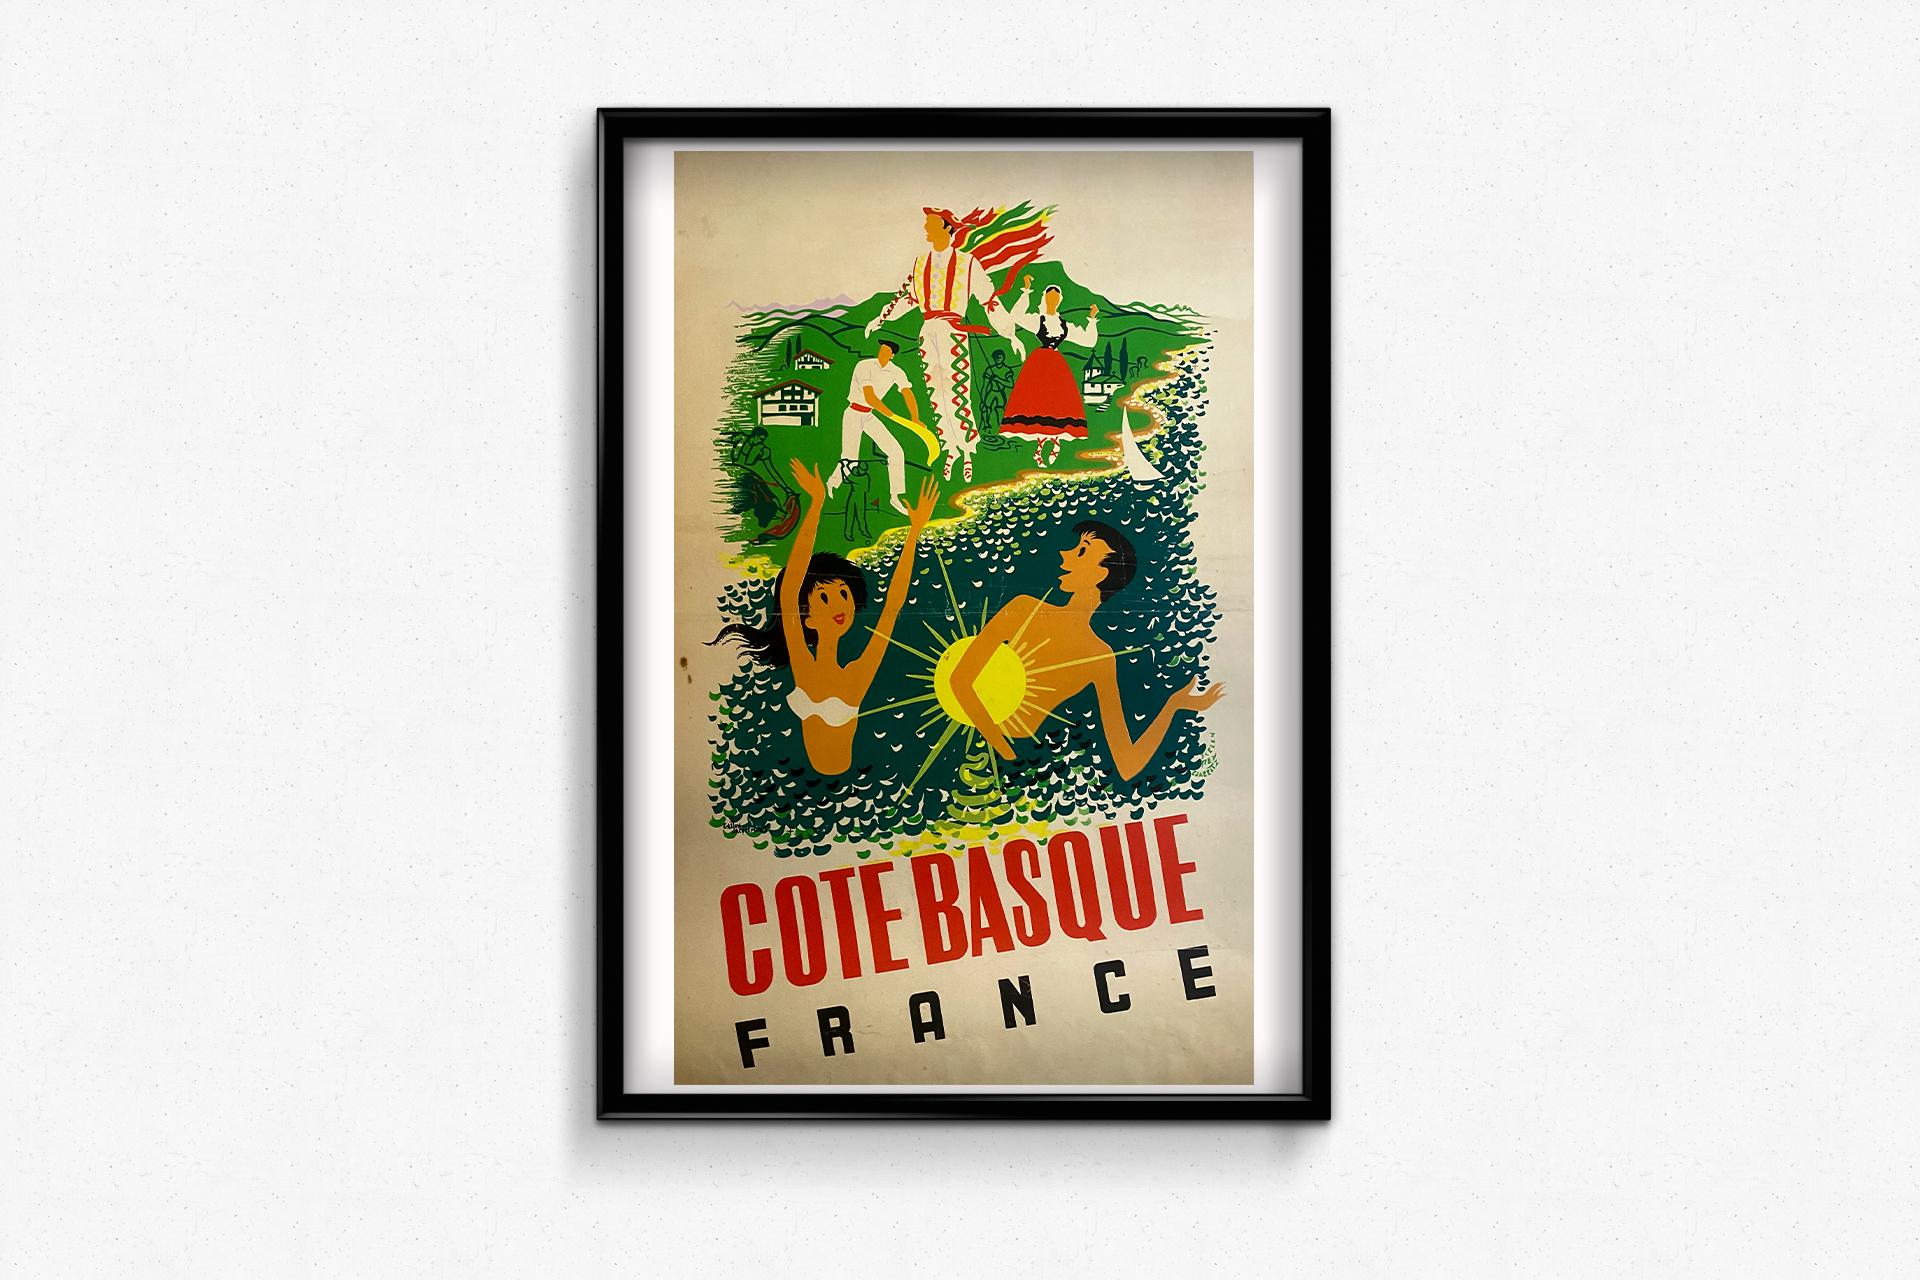 Ein wunderschönes Plakat, das uns einlädt, die baskische Küste, ihre Strände, ihre Golfplätze, ihren traditionellen Sport zu entdecken: Baskische Pelota, sowie alle anderen kulturellen Aspekte.

Dieses Plakat wurde von Gaston Jacquement um 1940